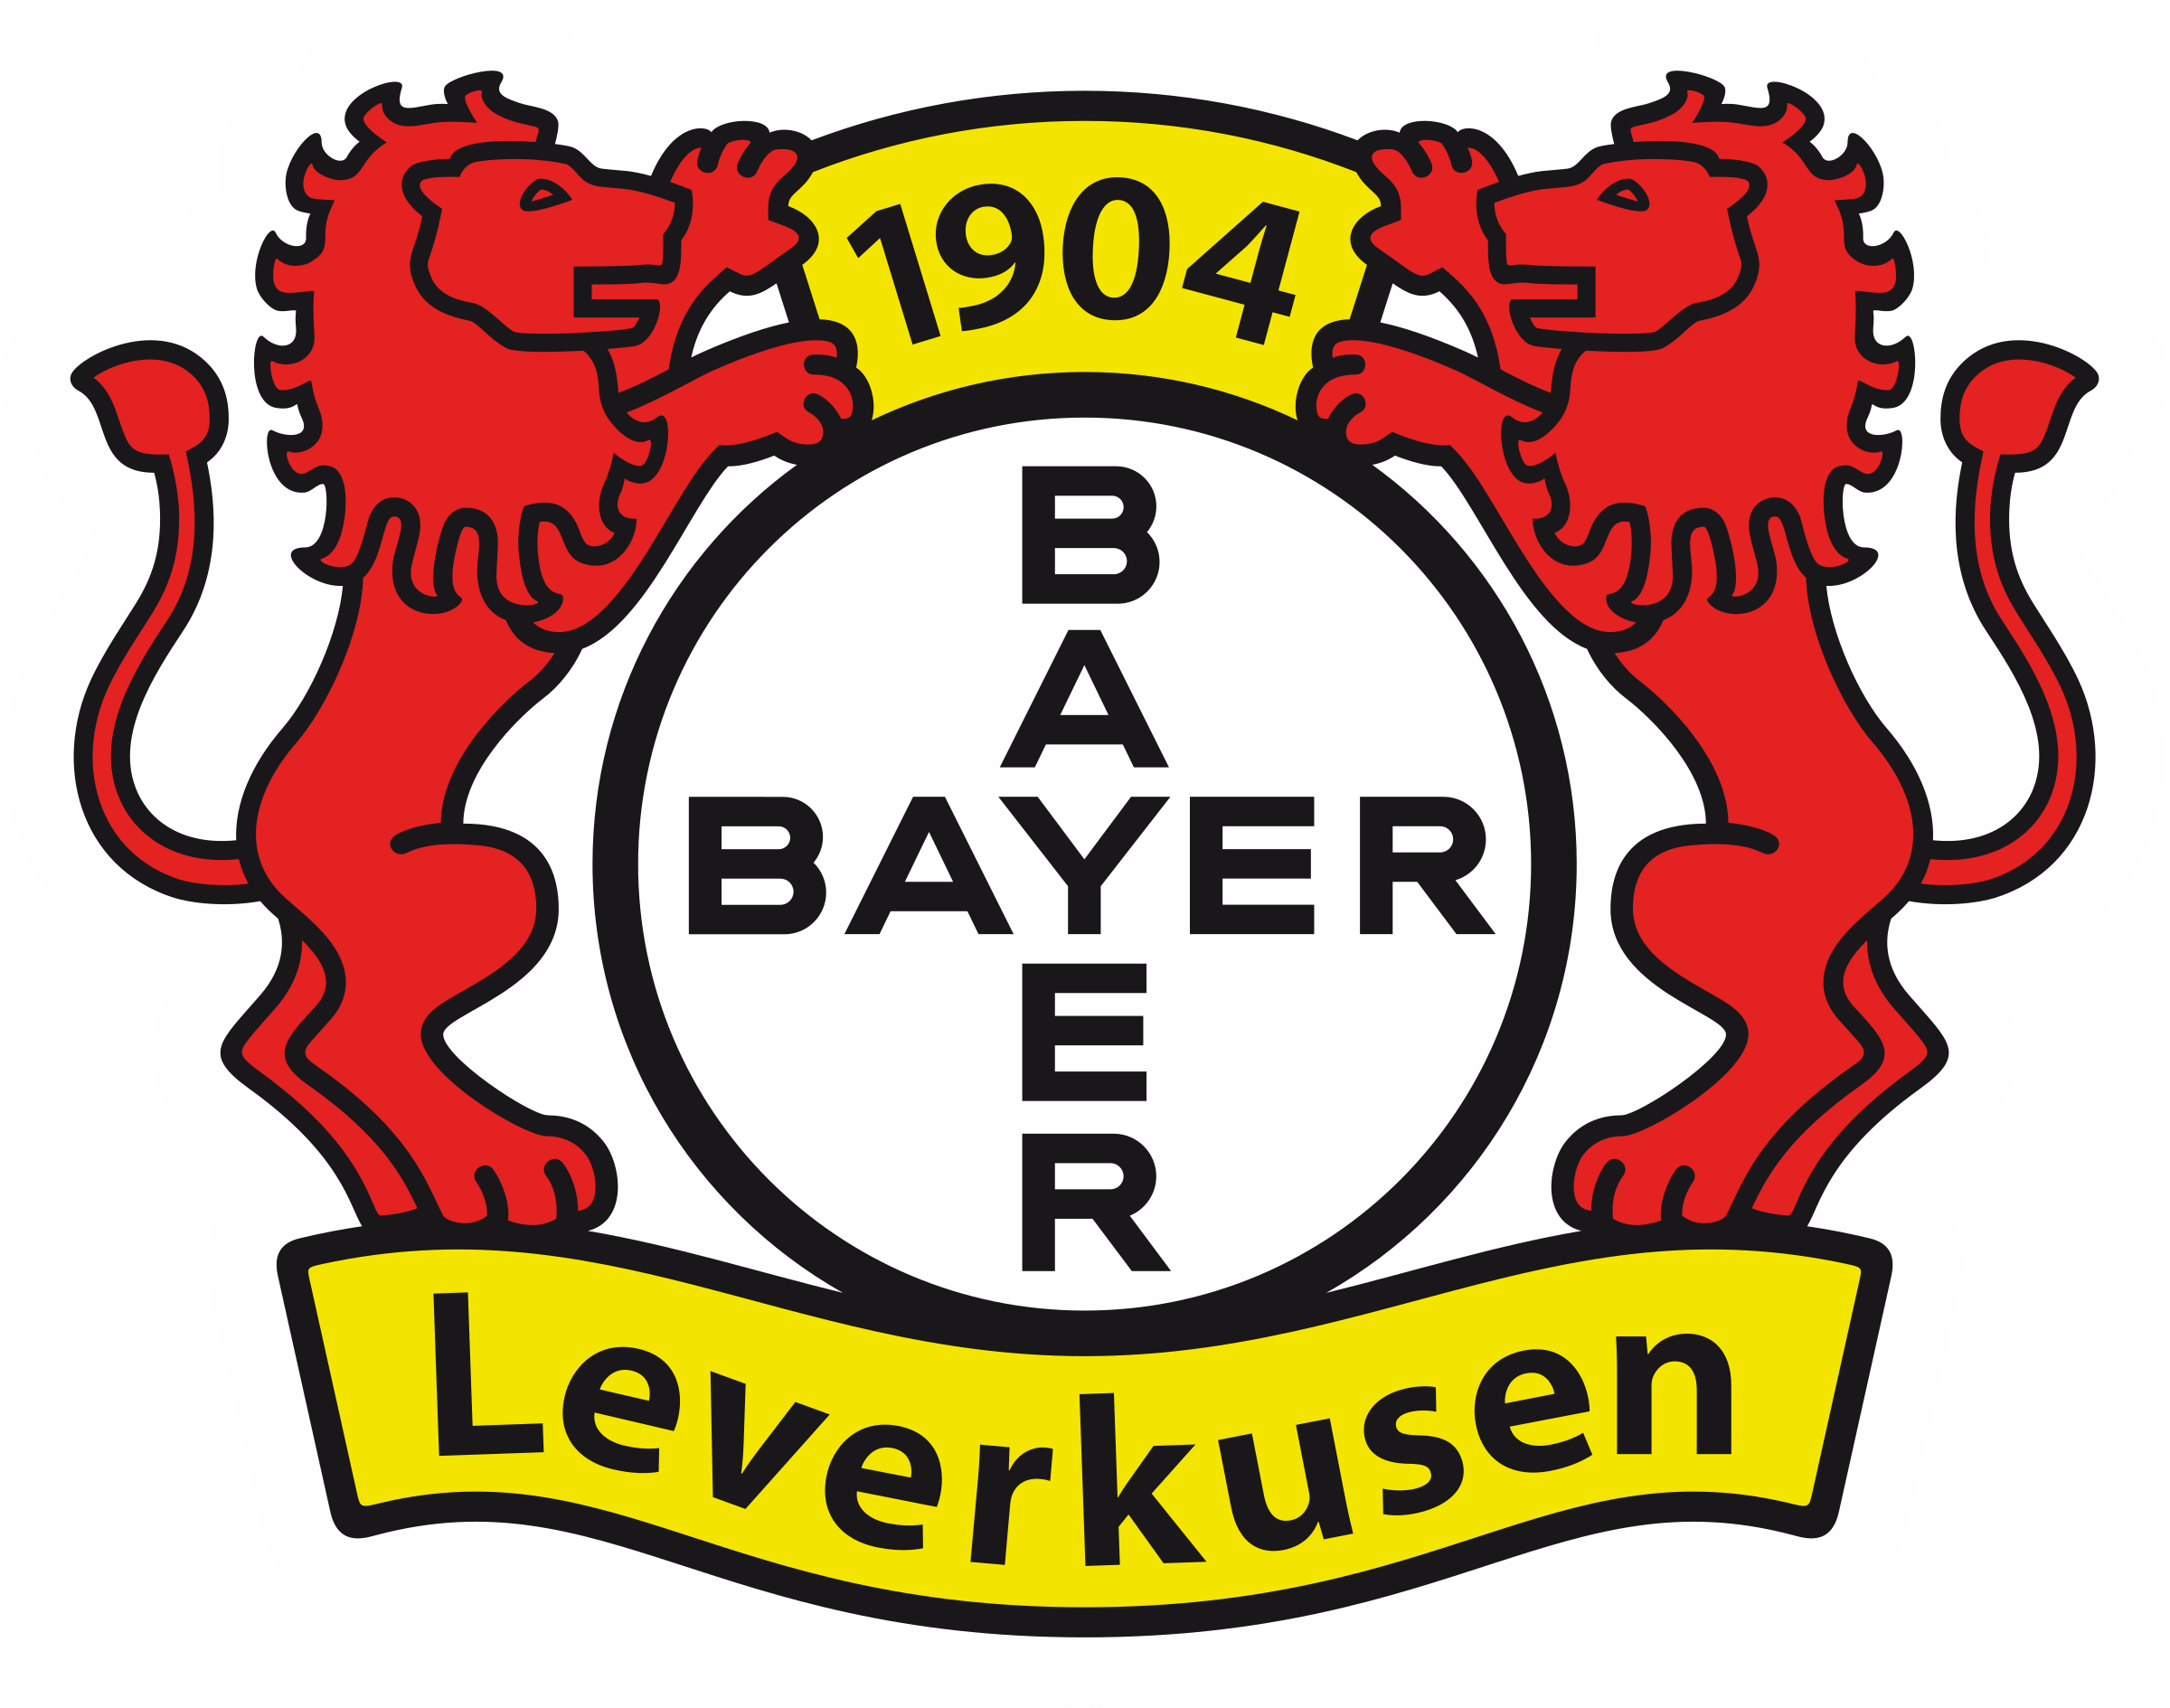 Bayer 04 Leverkusen Brand Logo